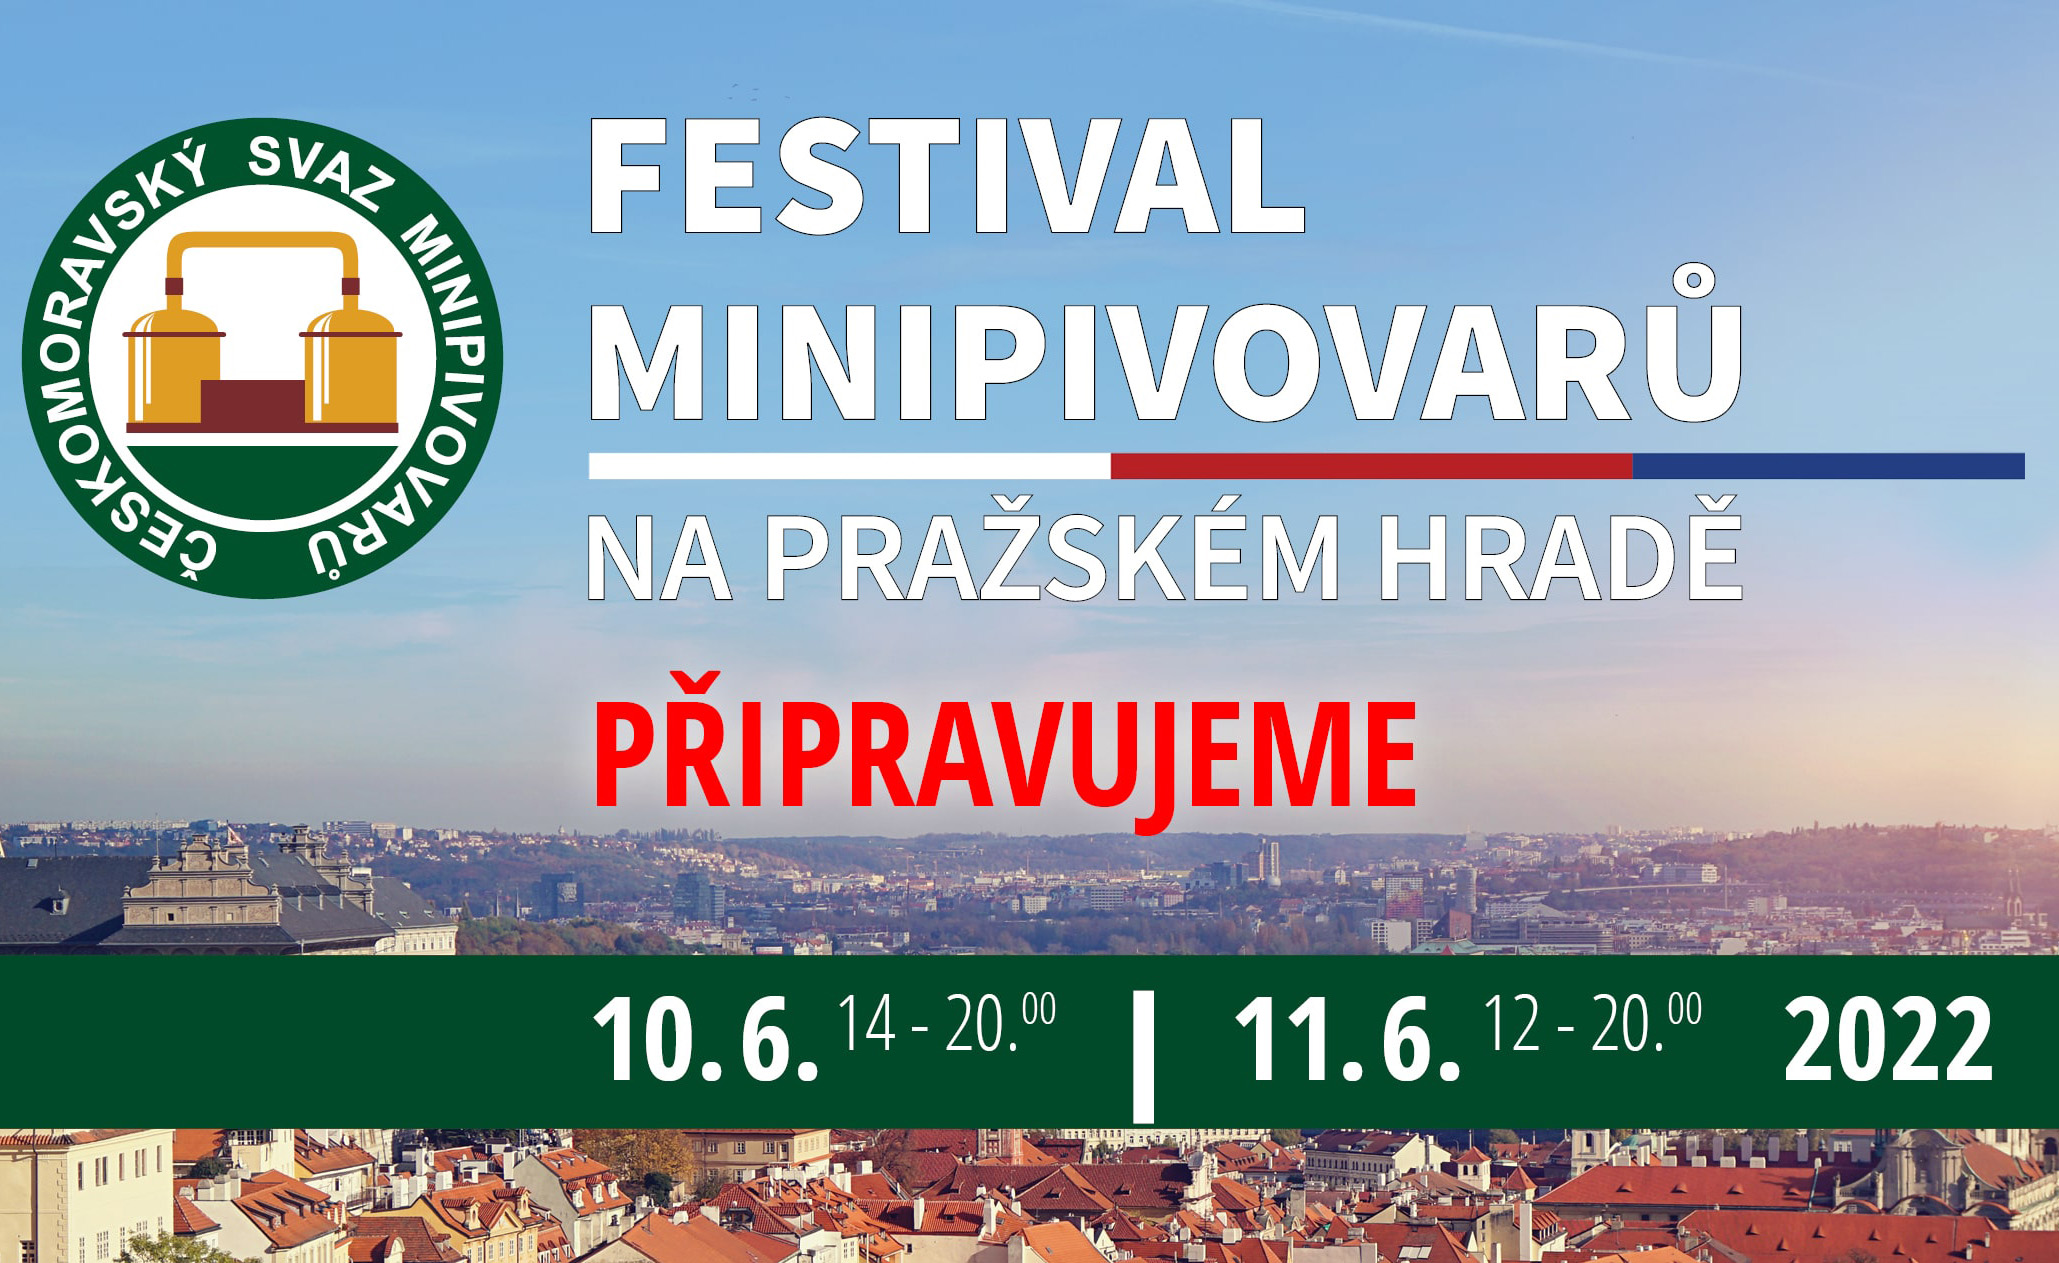 Festival minipivovarů na Pražském hradě